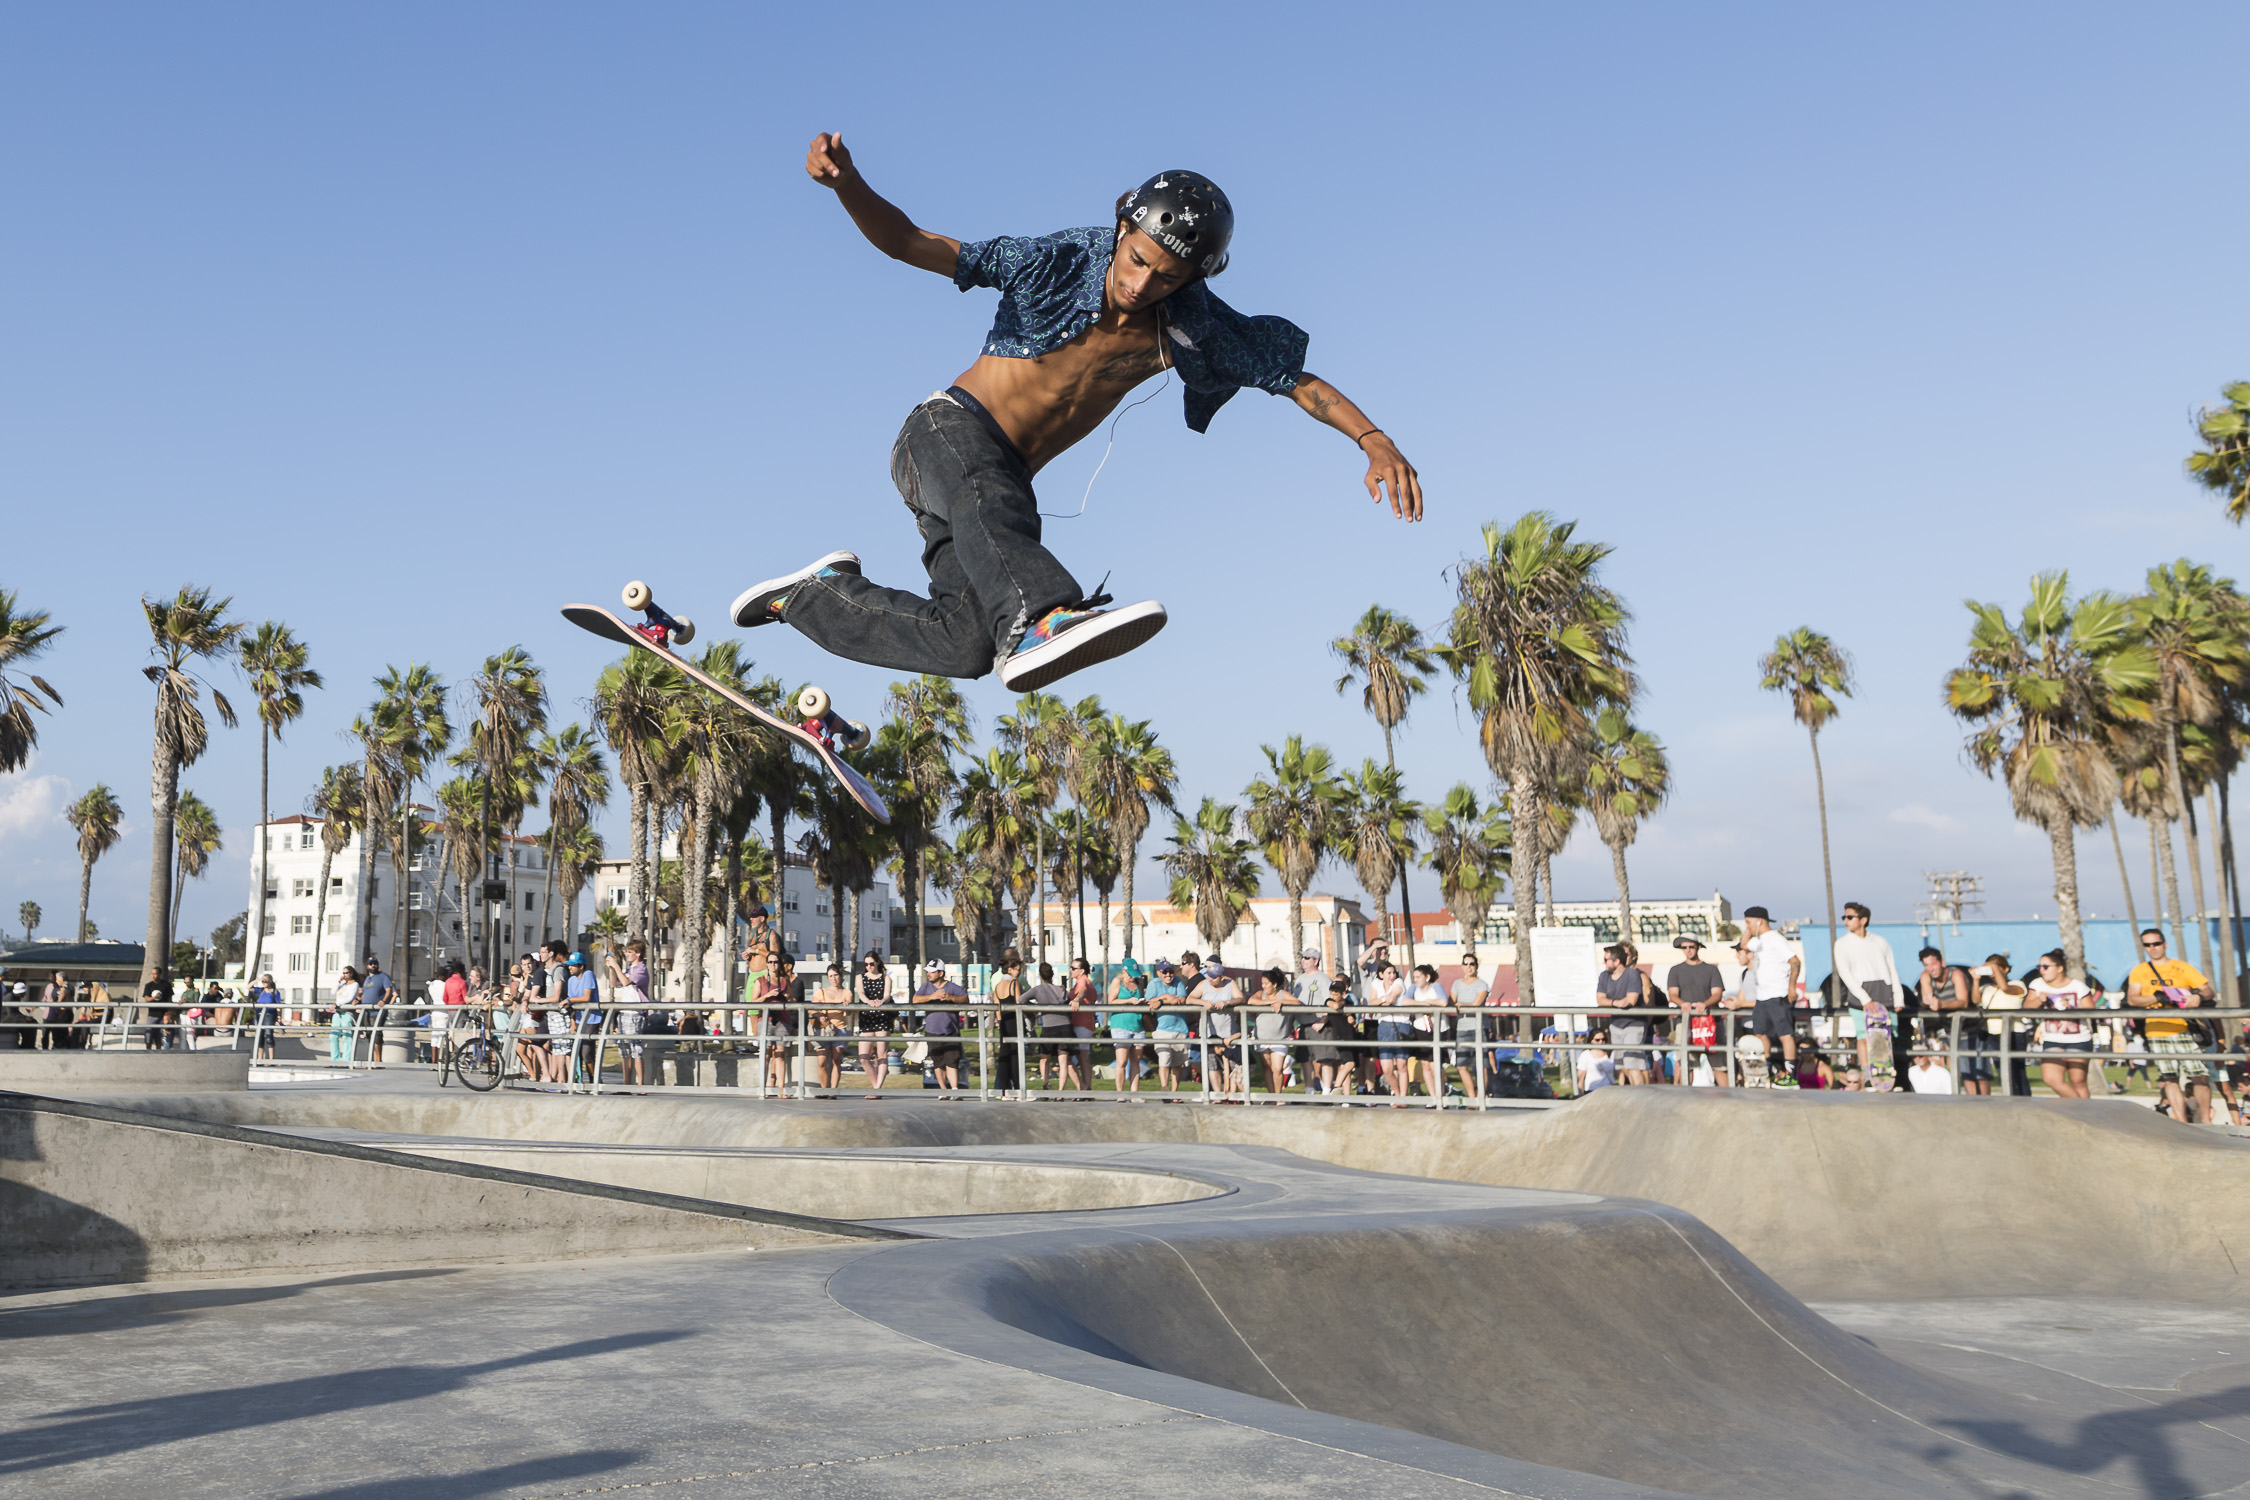 Portfolio(20151018 – Skater Venice Beach Skate Park – 76)